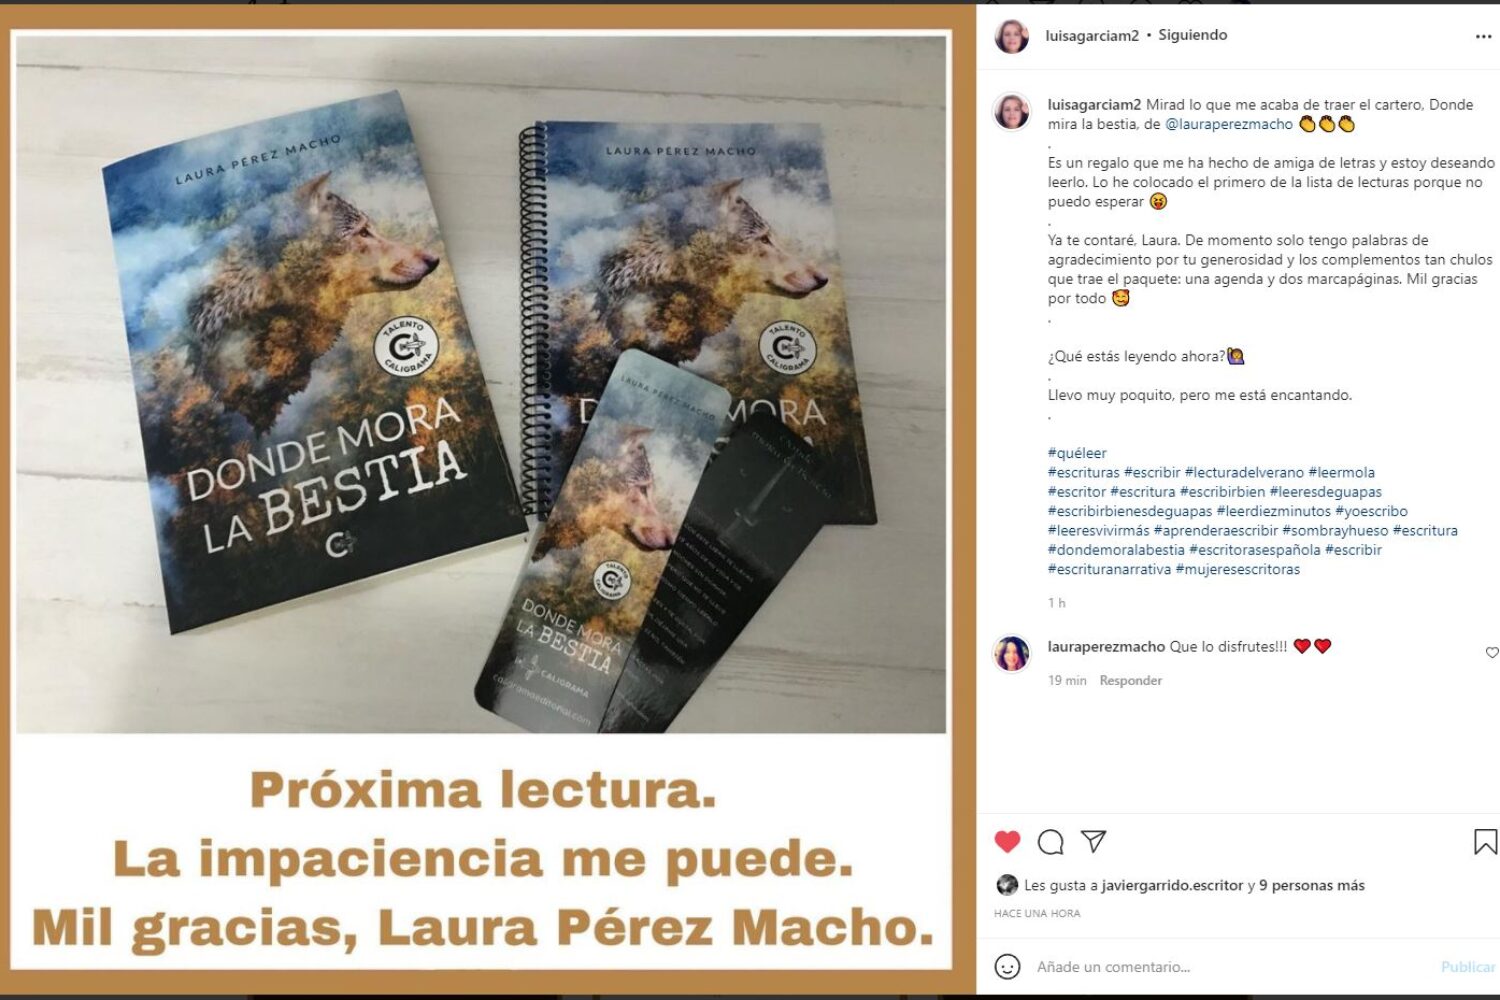 Story the Luisa al recibir libro, agenda y marcapáginas